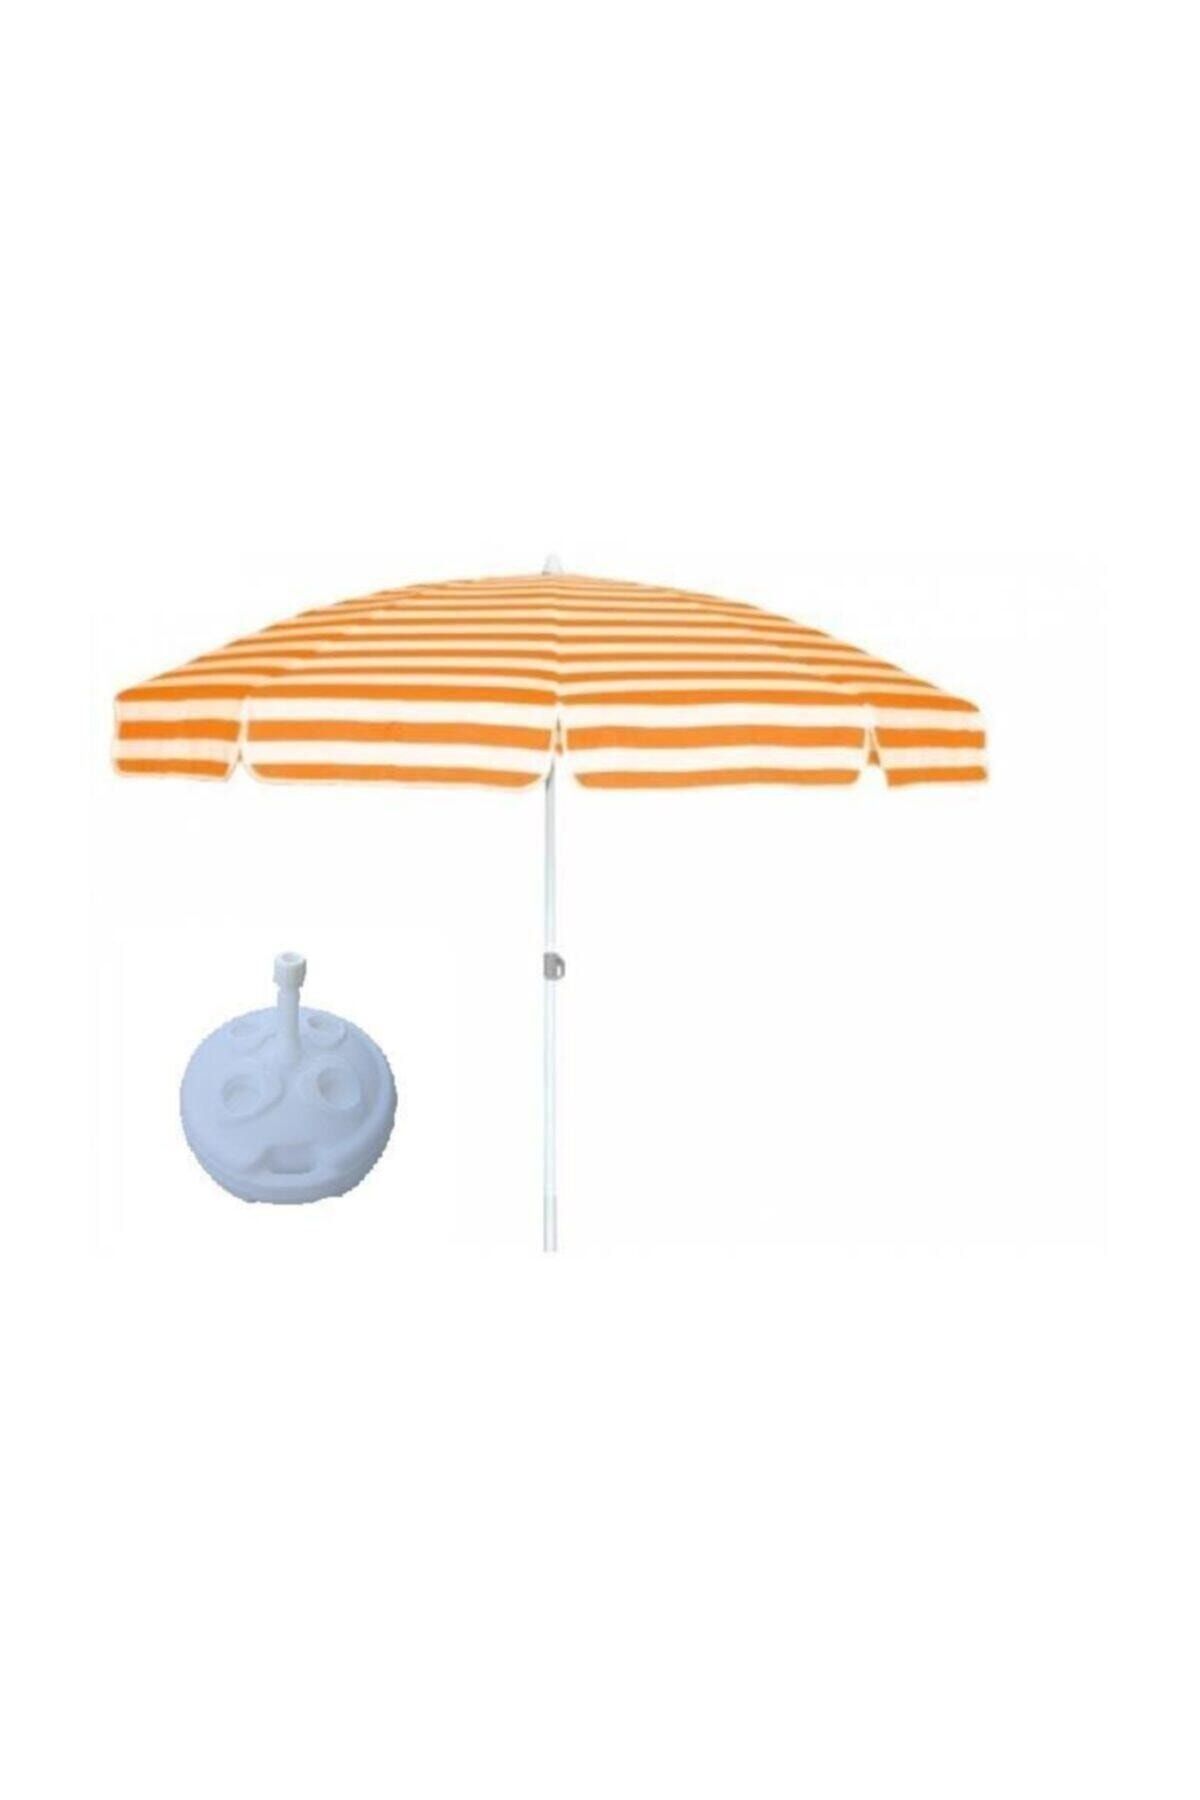 SUME Yüksek Kalite 10 Telli Eğilebilir  Bidon Plaj Şemsiyesi 200 cm